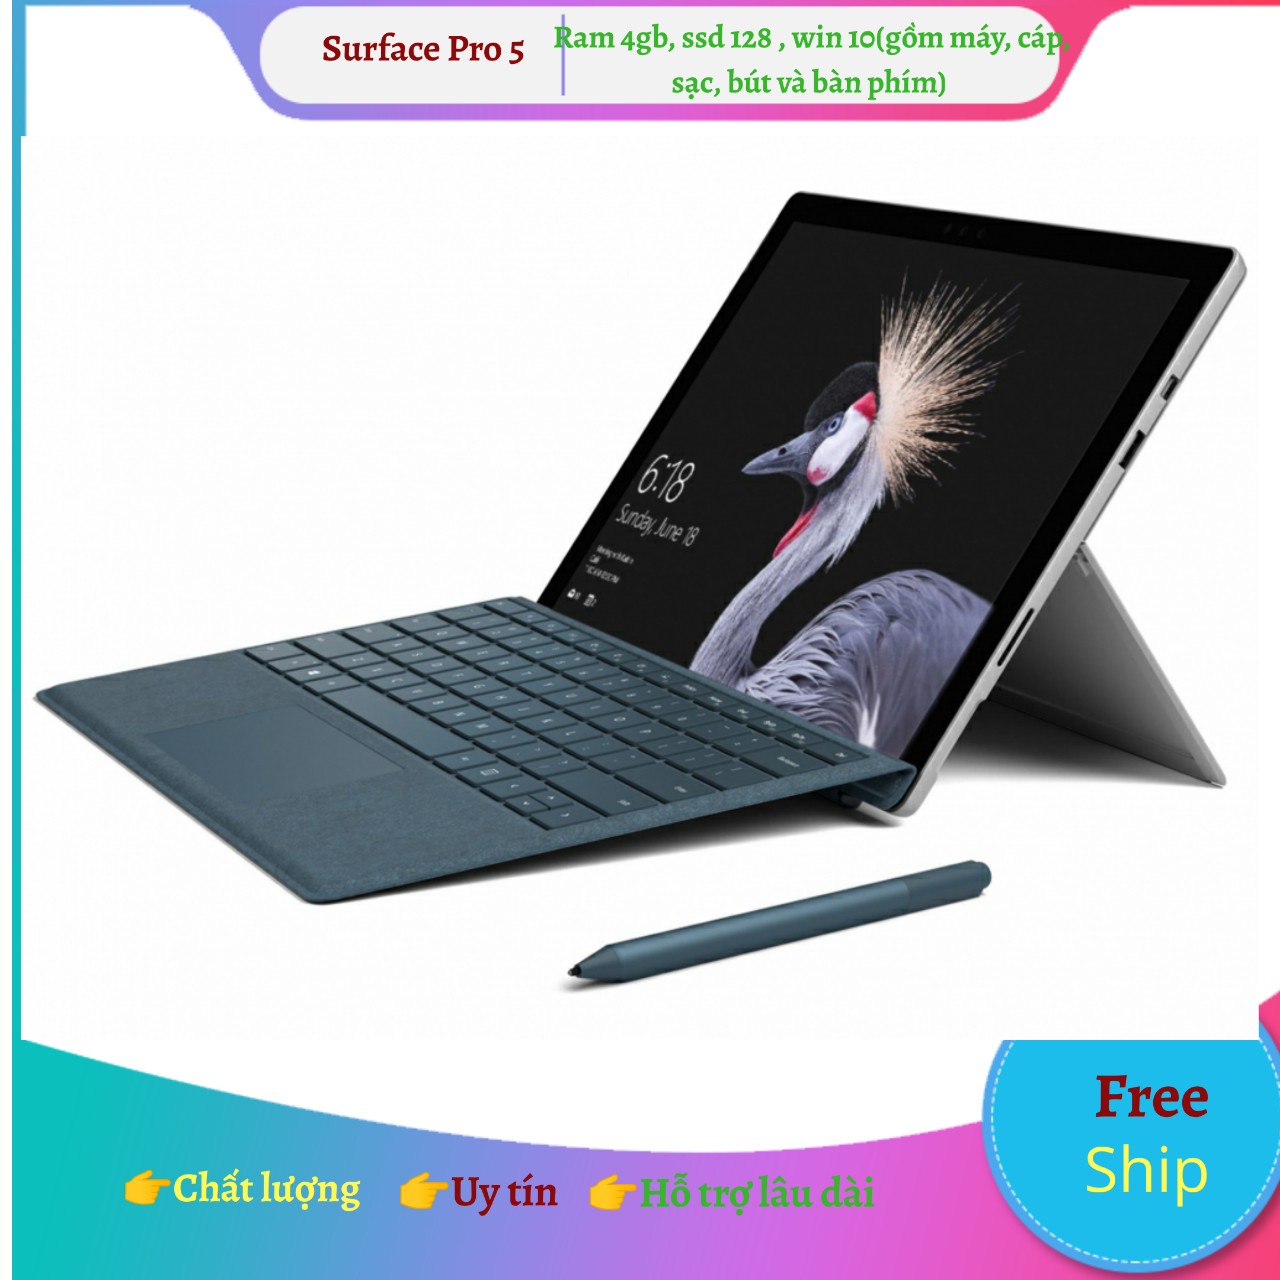 Laptop SURFACE PRO 3 (99%)có nhiều phiên bản bộ nhớ, bàn phím blutooth hít nam châm, bút, tặng chuột quang...